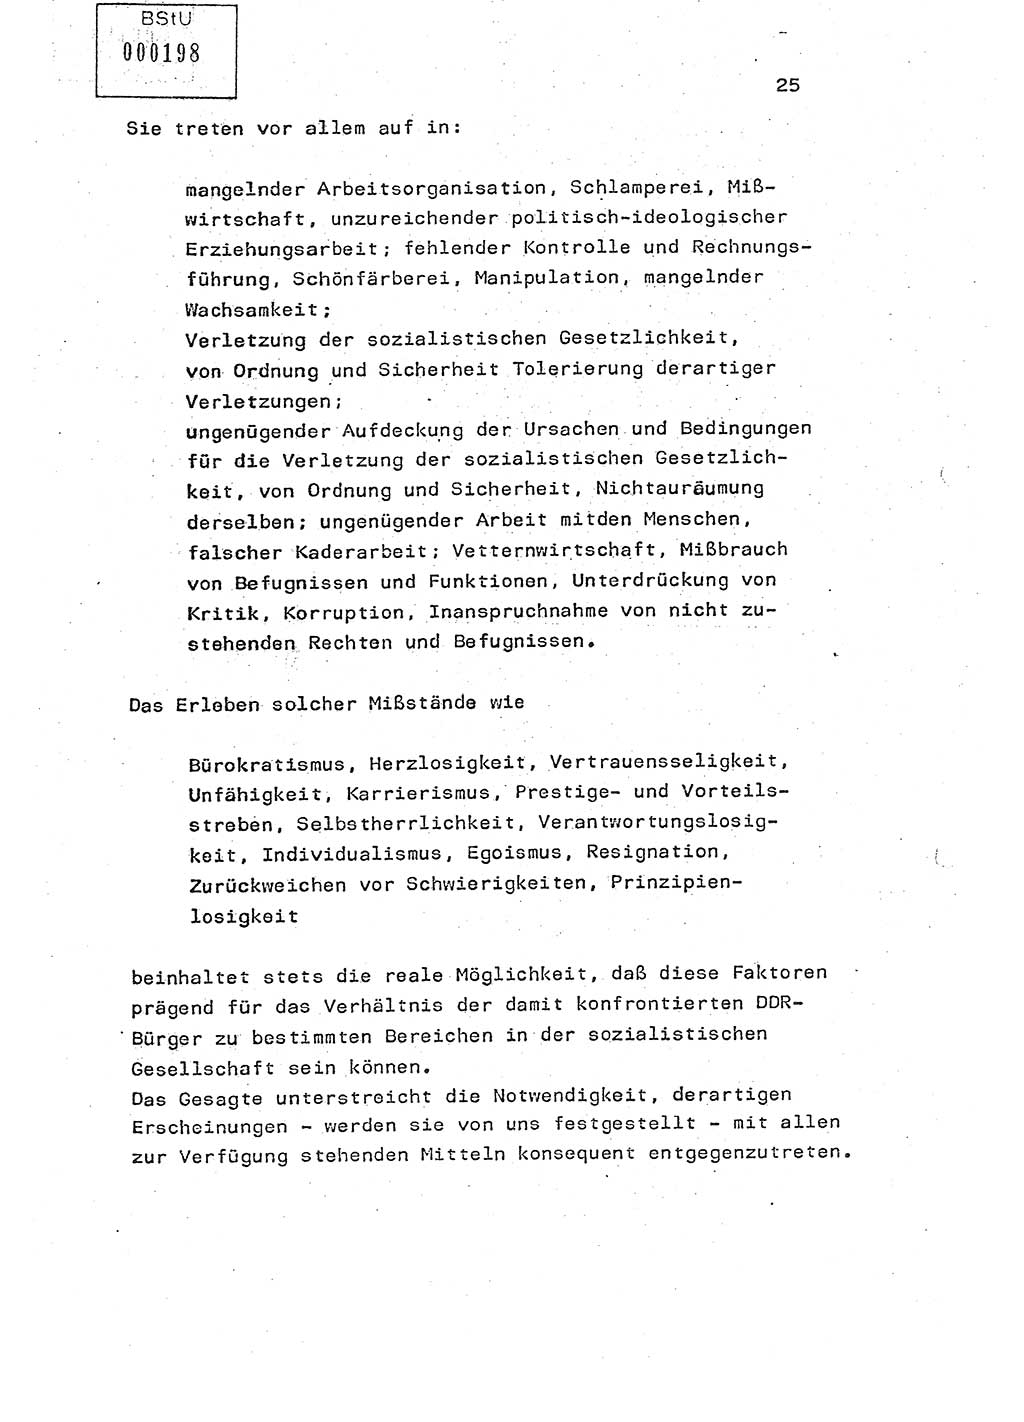 Studienmaterial Ministerium für Staatssicherheit (MfS) [Deutsche Demokratische Republik (DDR)], Hauptabteilung (HA) Ⅸ/ Auswertungs- und Kontrollgruppe (AKG), Berlin ca. 1986, Seite 25 (Stud.-Mat. MfS DDR HA Ⅸ/AKG 1986, S. 25)